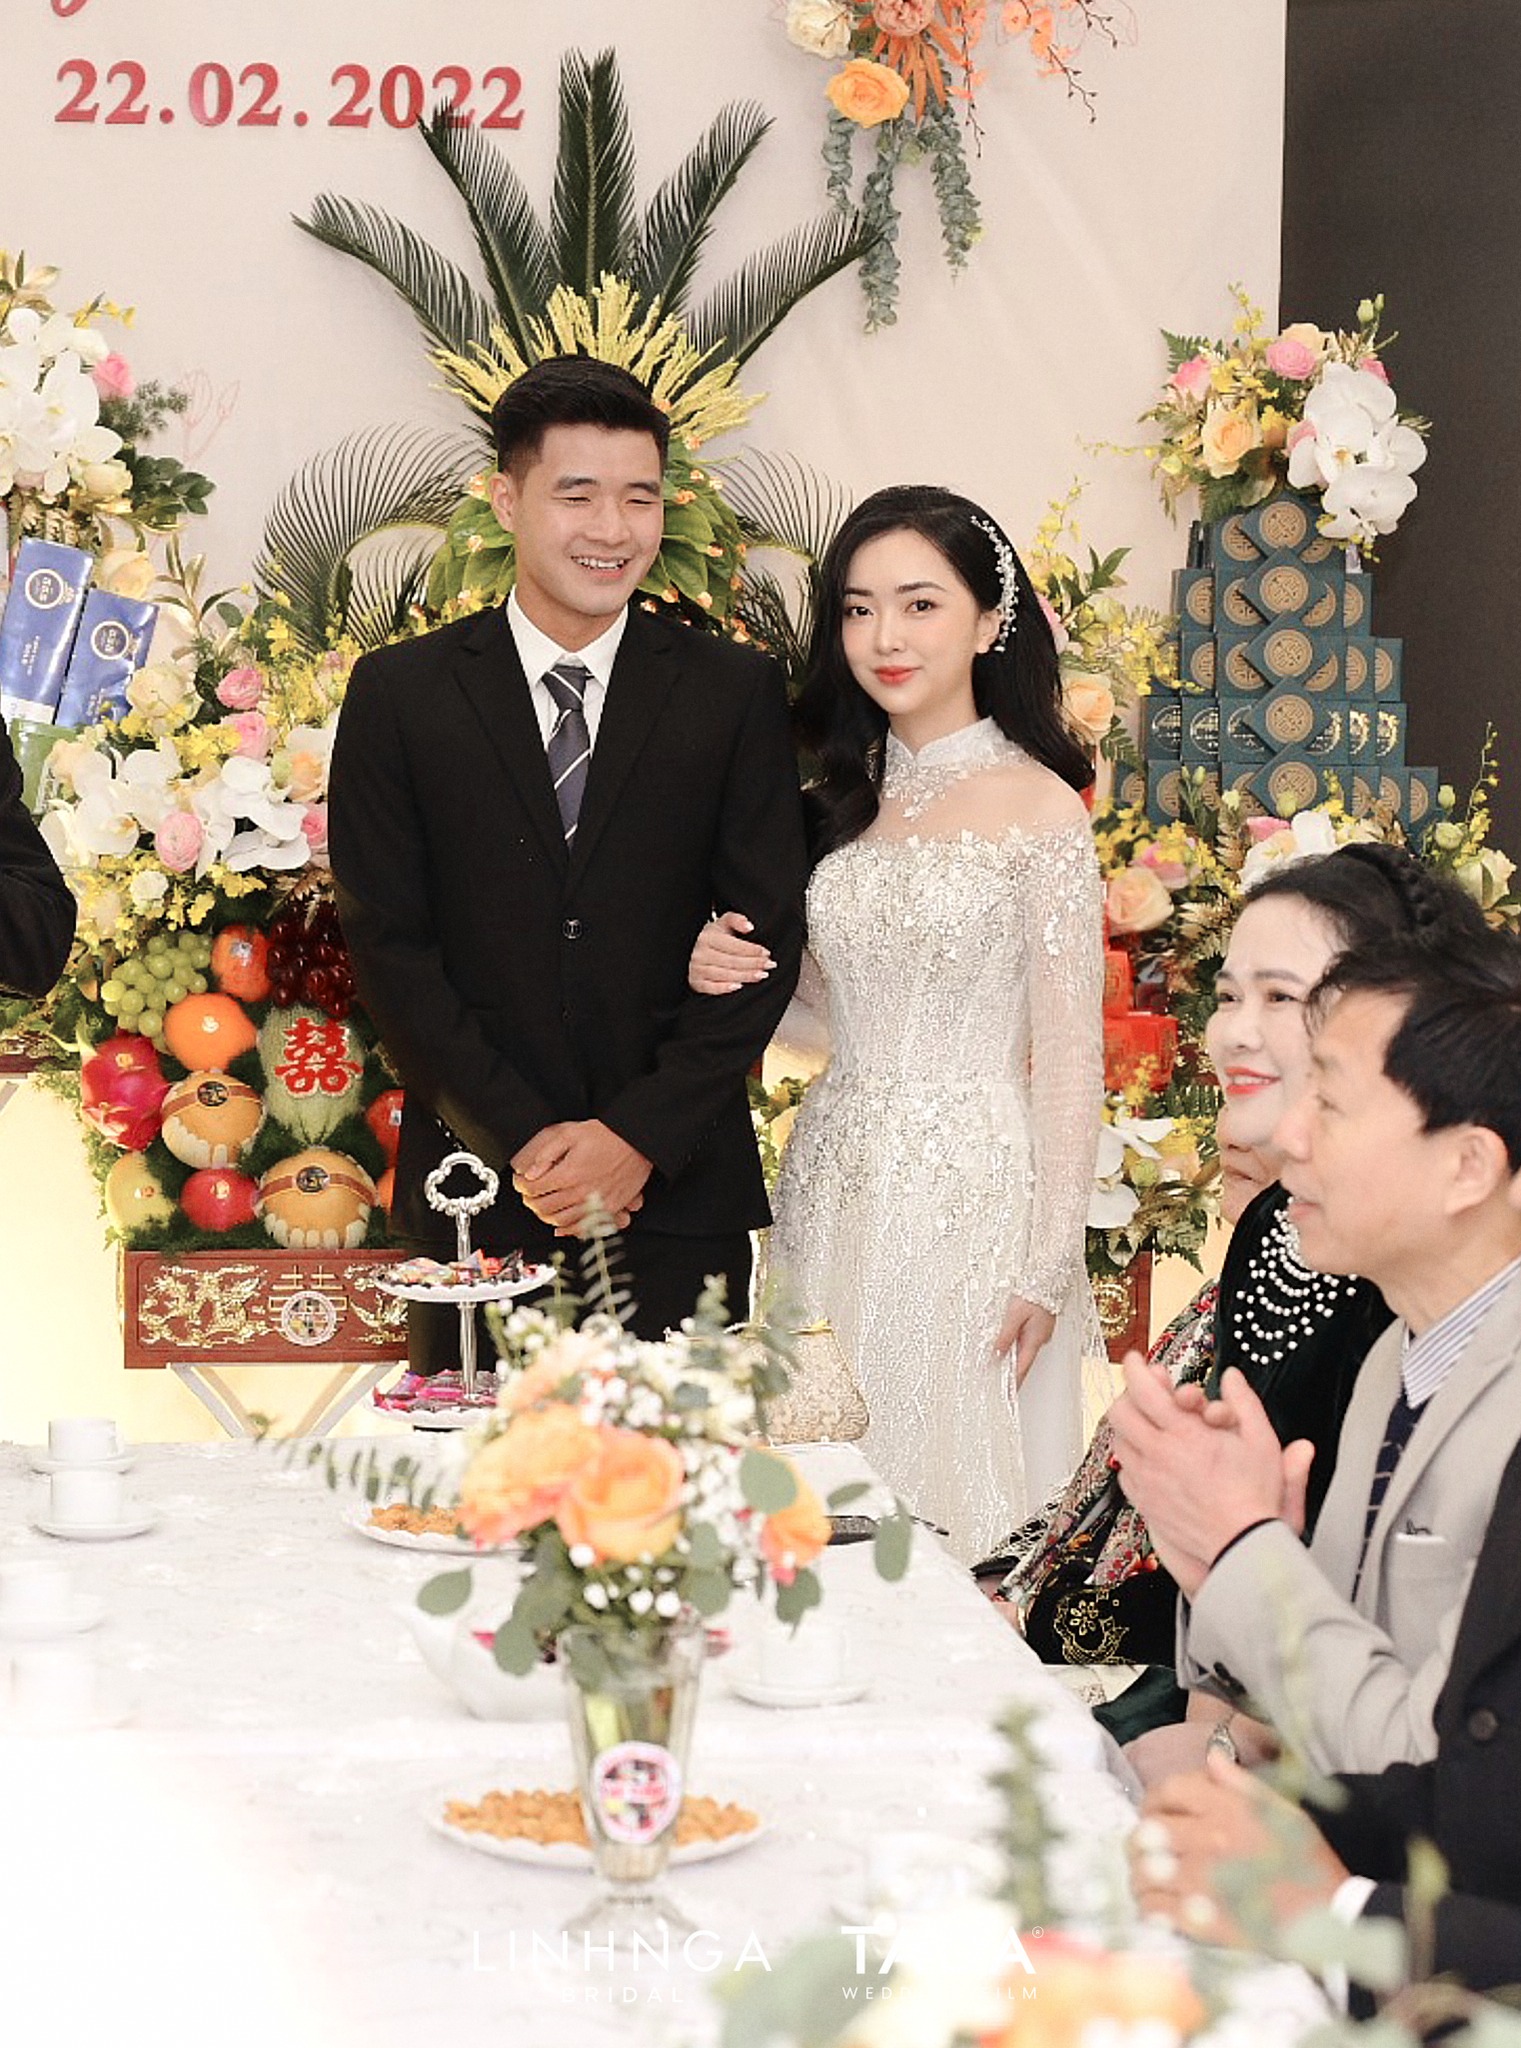 Hôn lễ được diễn ra tại Bắc Giang - quê nhà của cô dâu vào lúc 10h30 ngày 22/02/2022. 